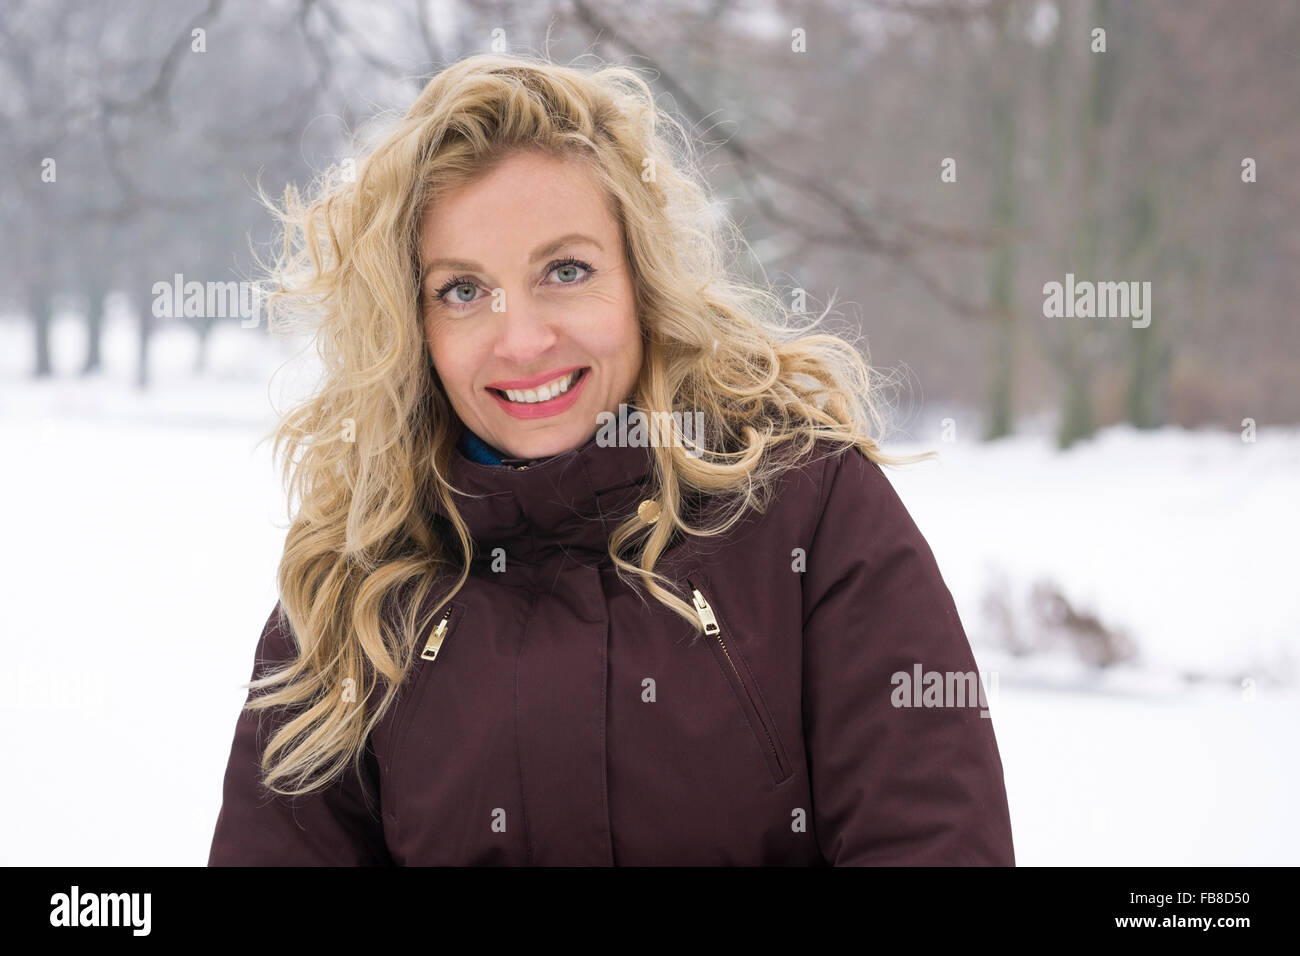 La mujer disfruta de la nieve en invierno Foto de stock